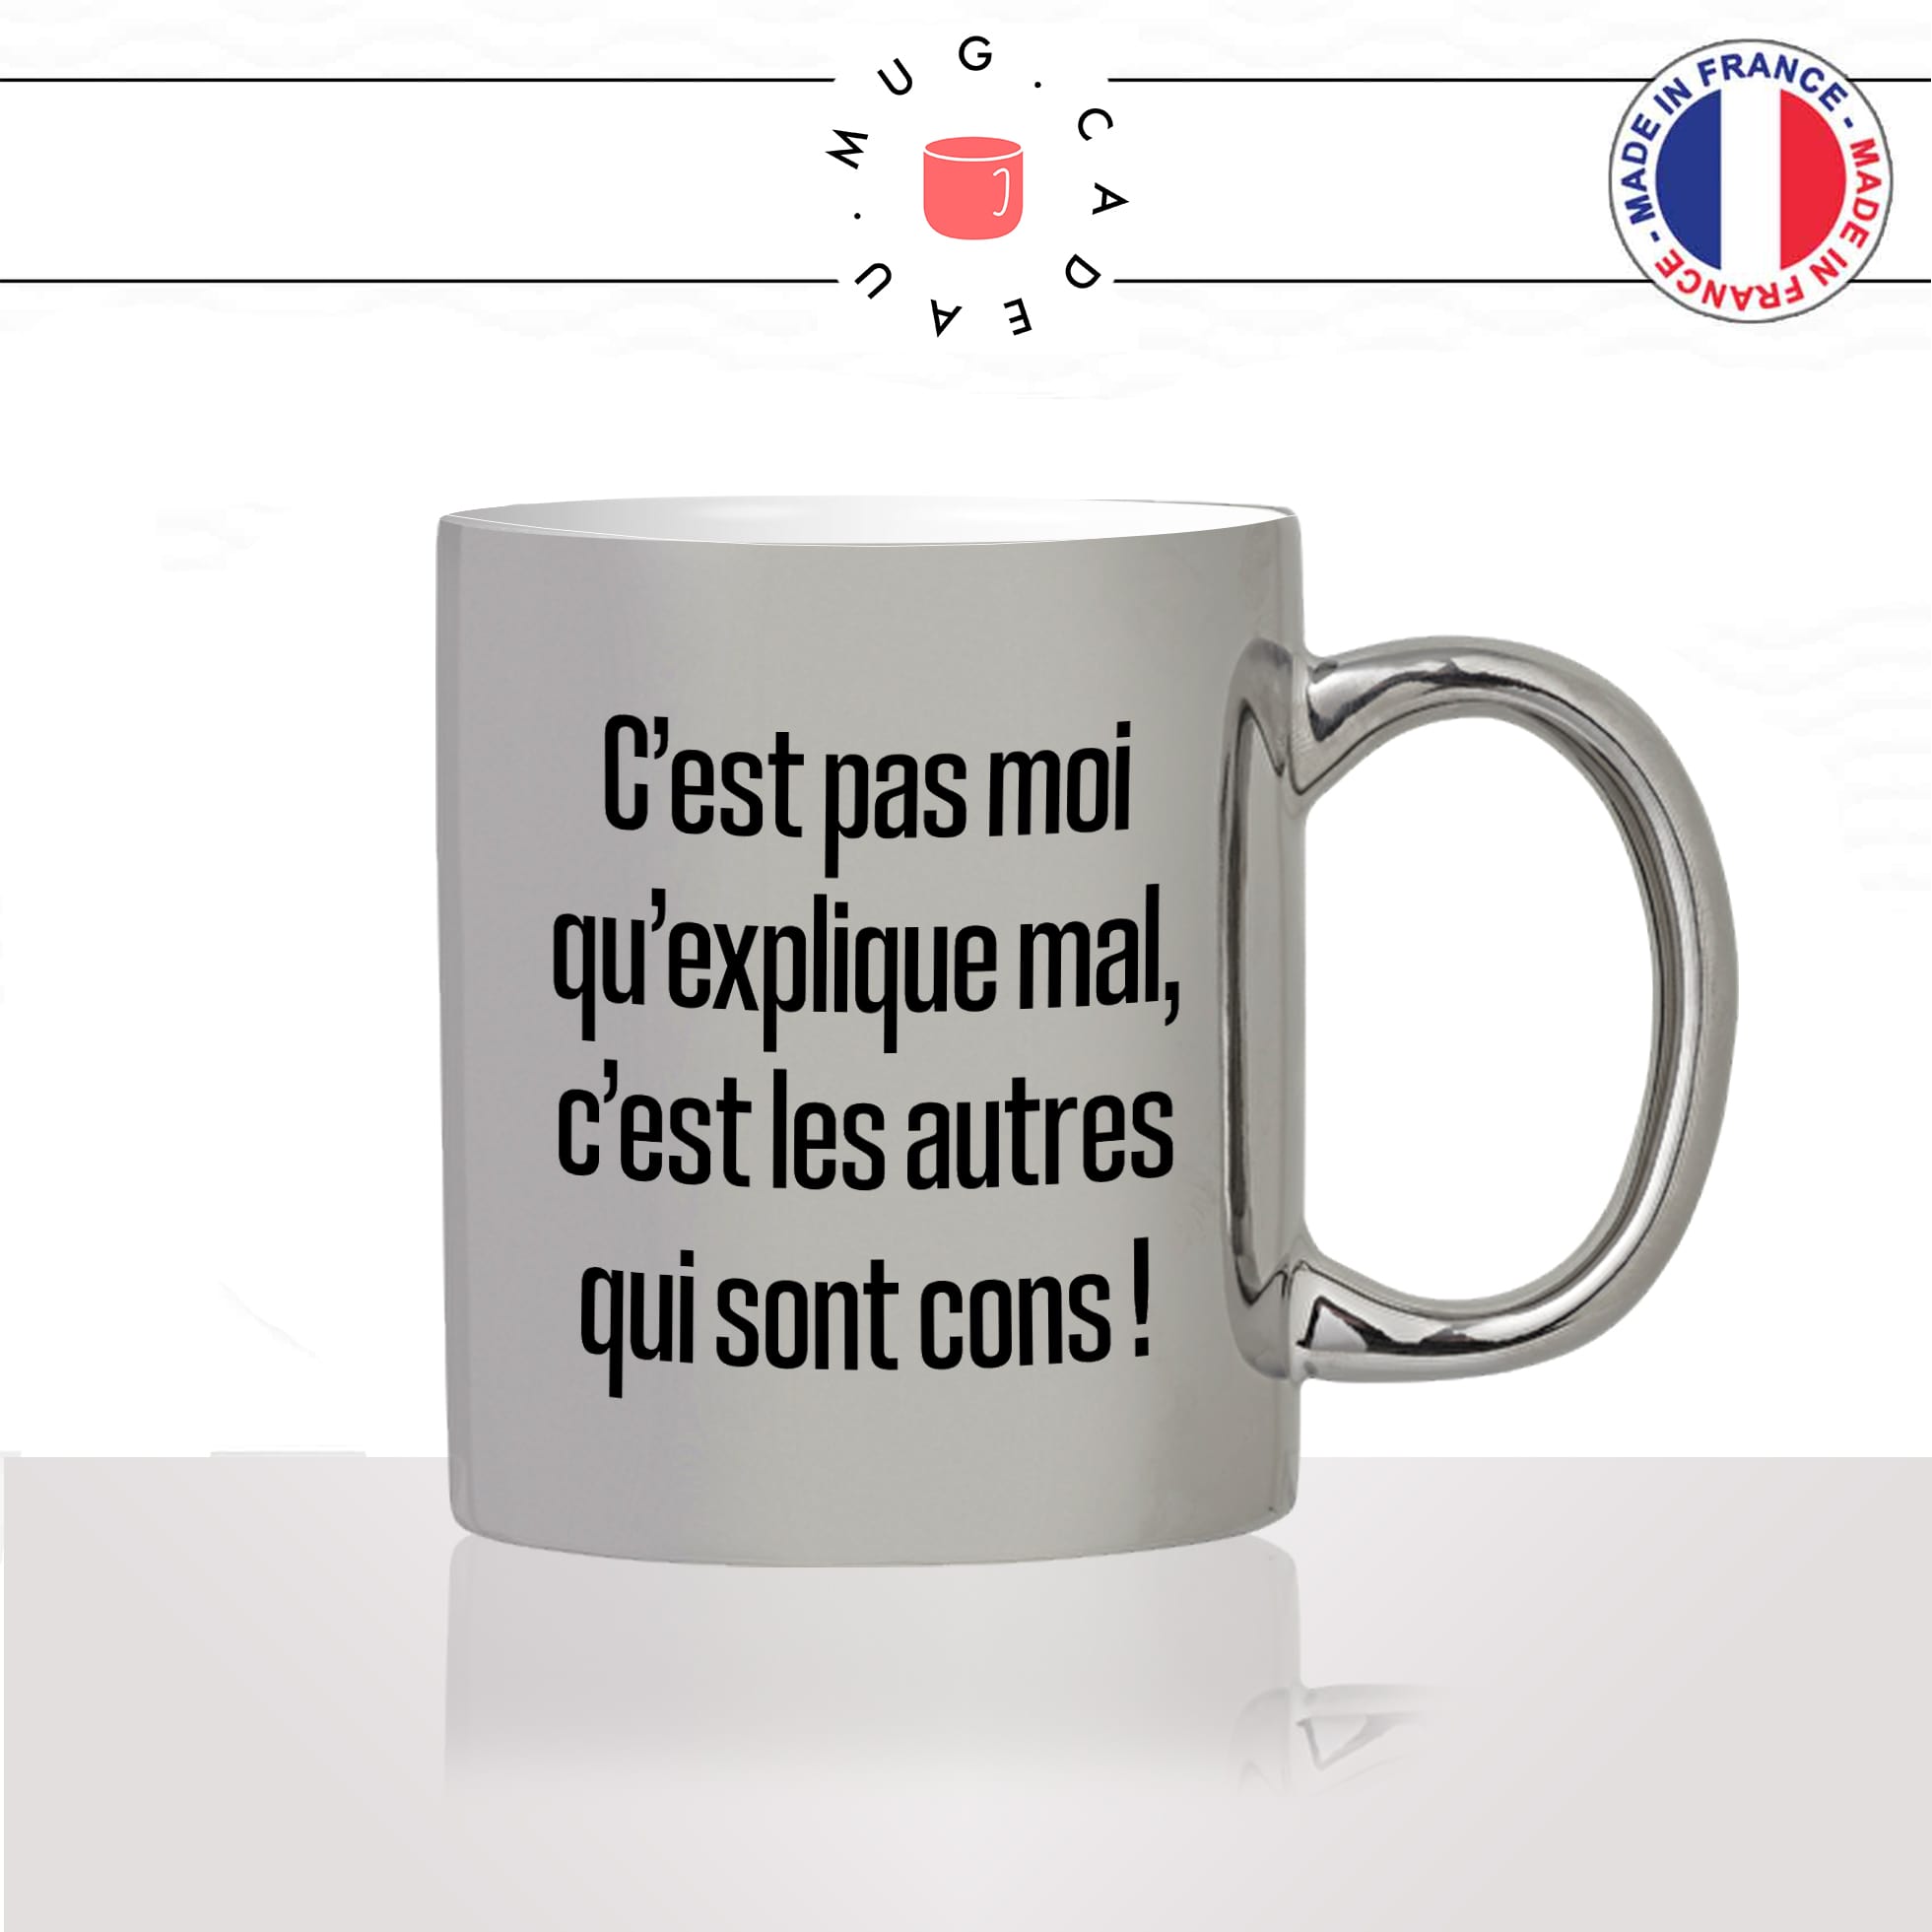 mug-tasse-argent-argenté-silver-acest-pas-moi-quexplique-mal-kaamelott-série-francaise-humour-cons-idée-cadeau-fun-cool-café-thé-original2-min